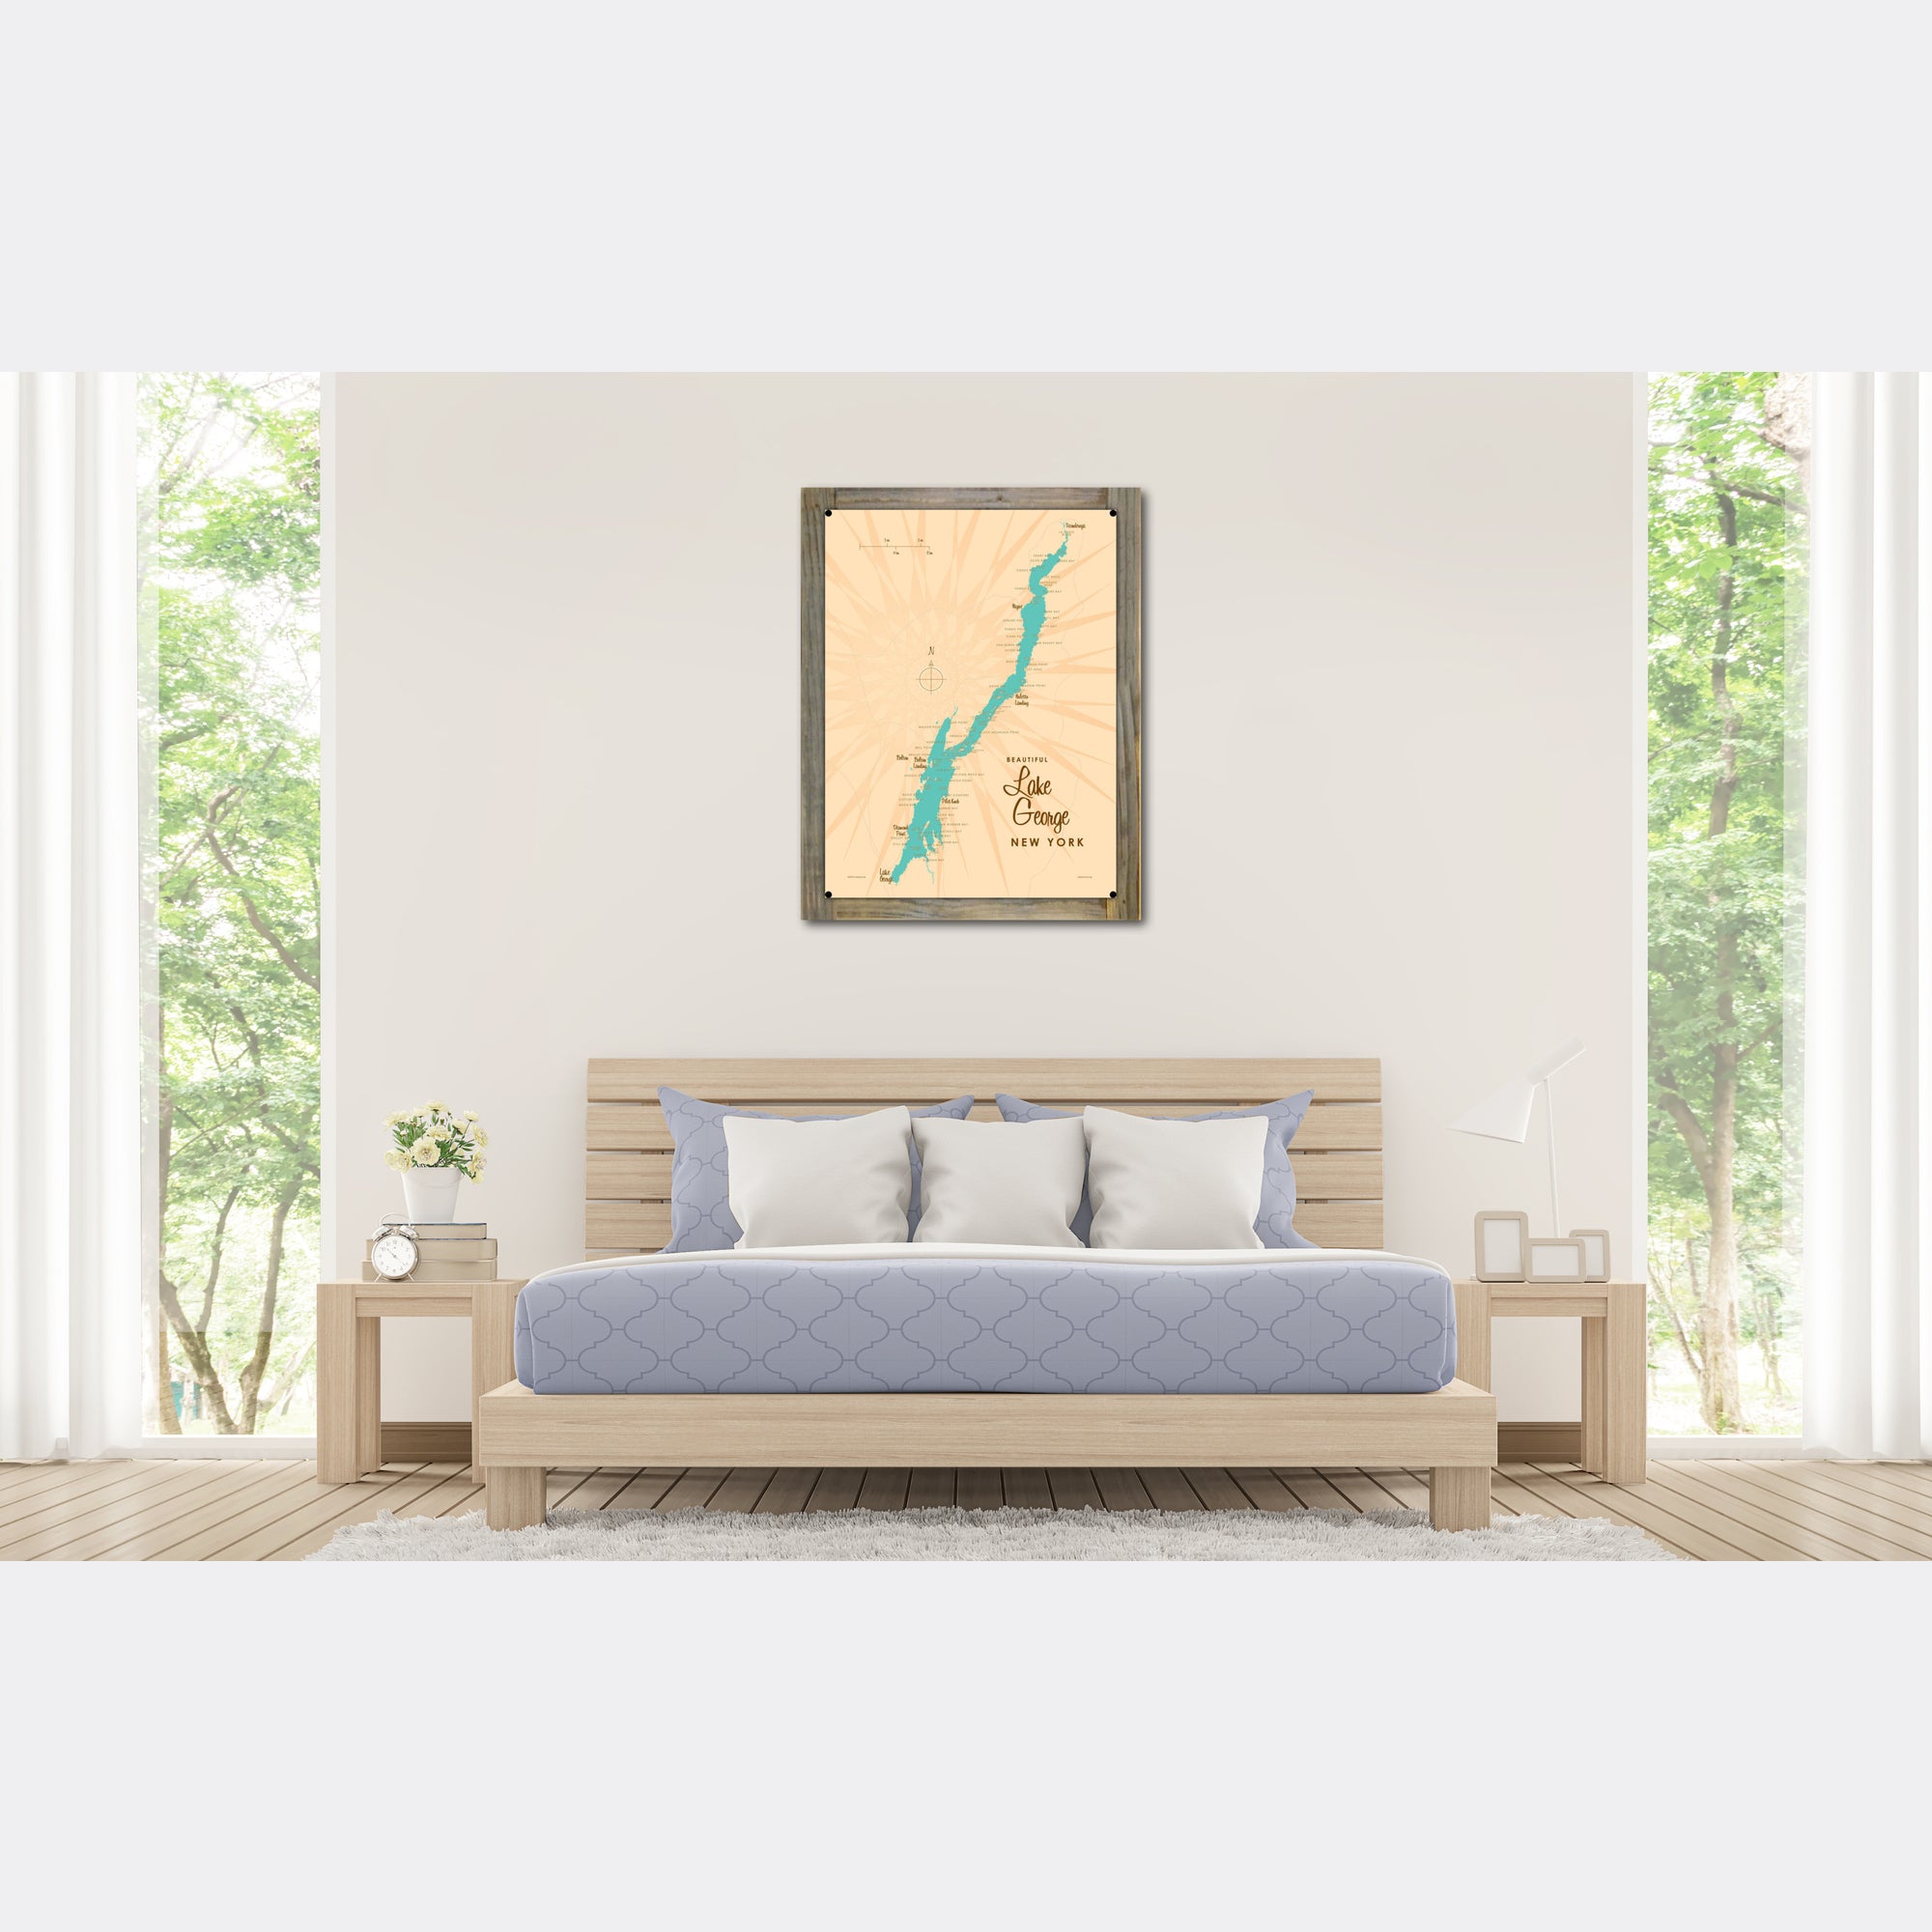 Lake George New York, Wood-Mounted Metal Sign Map Art